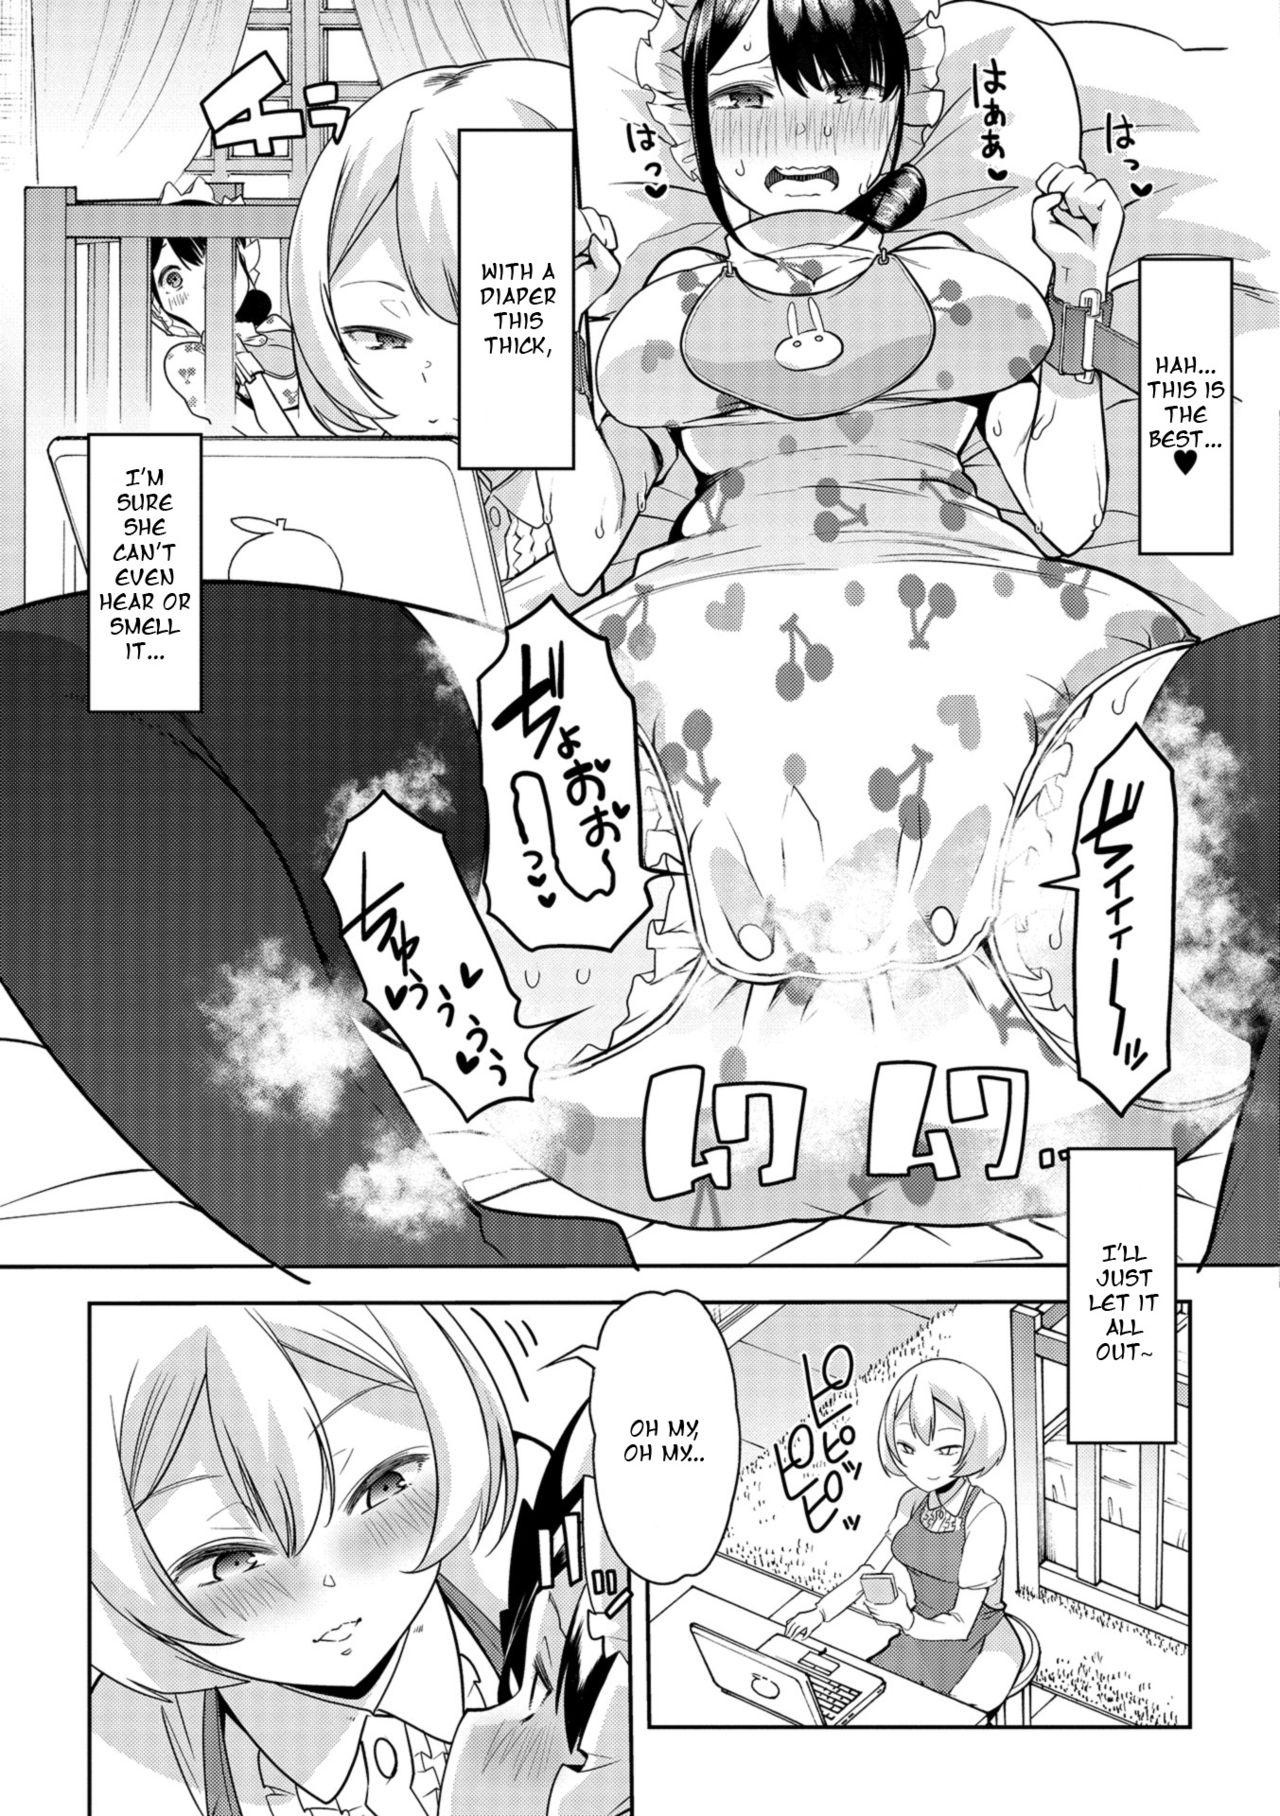 Menage Himitsu no Gyaku Toilet Training 3 Com - Page 7